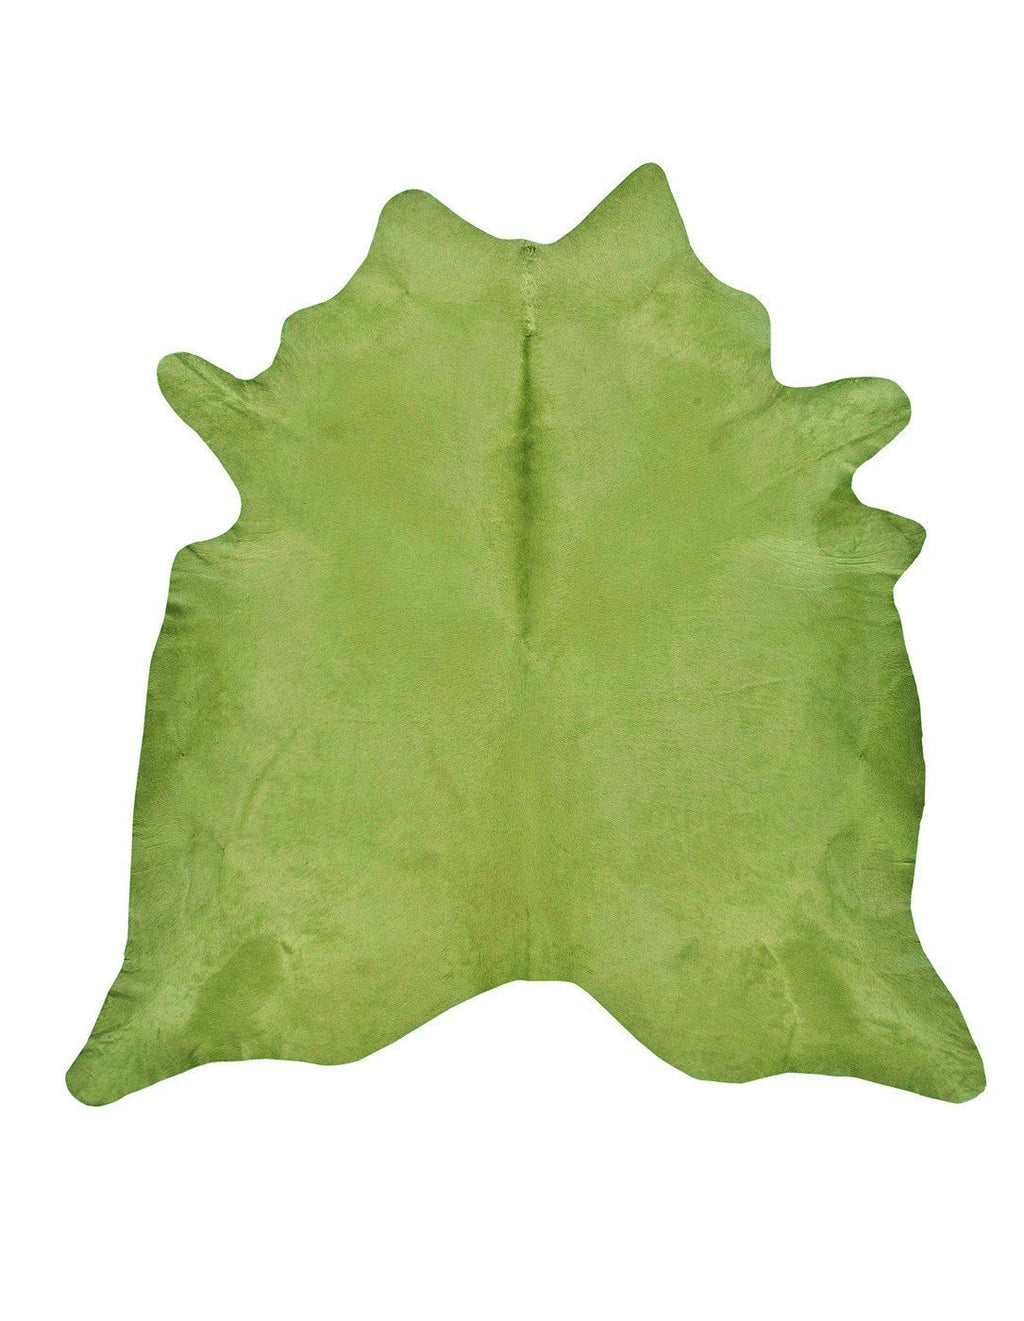 Green cowhide rug